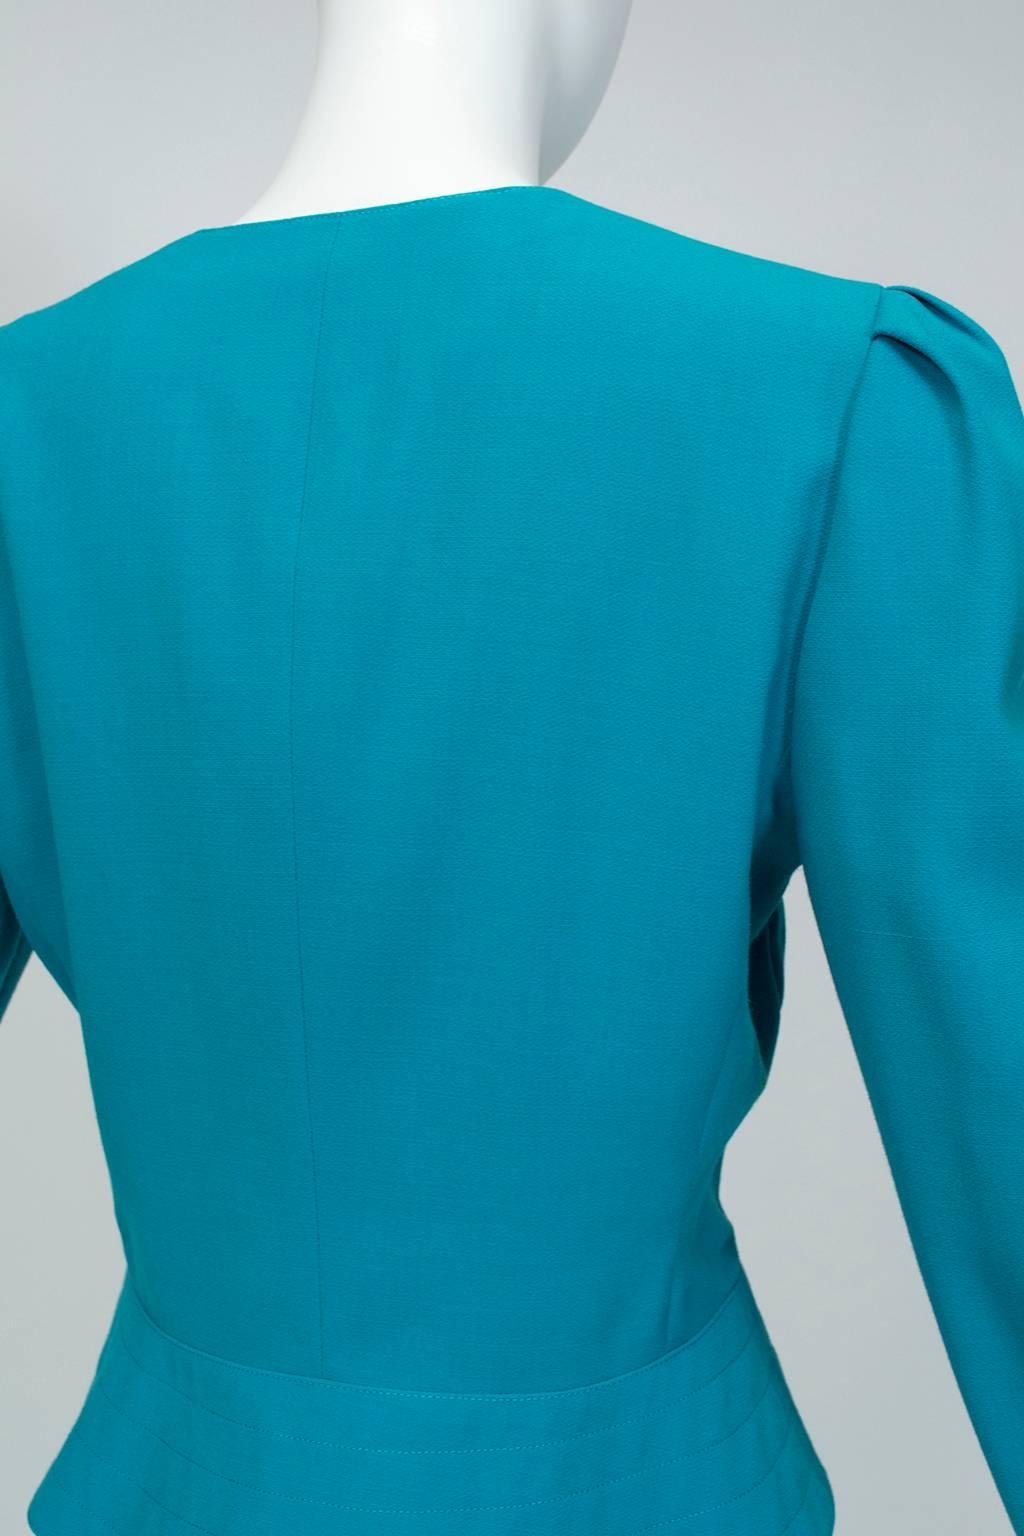 Louis Féraud Turquoise Costume jupe plissée à la main avec Provenance - US 8, 1980 Pour femmes en vente